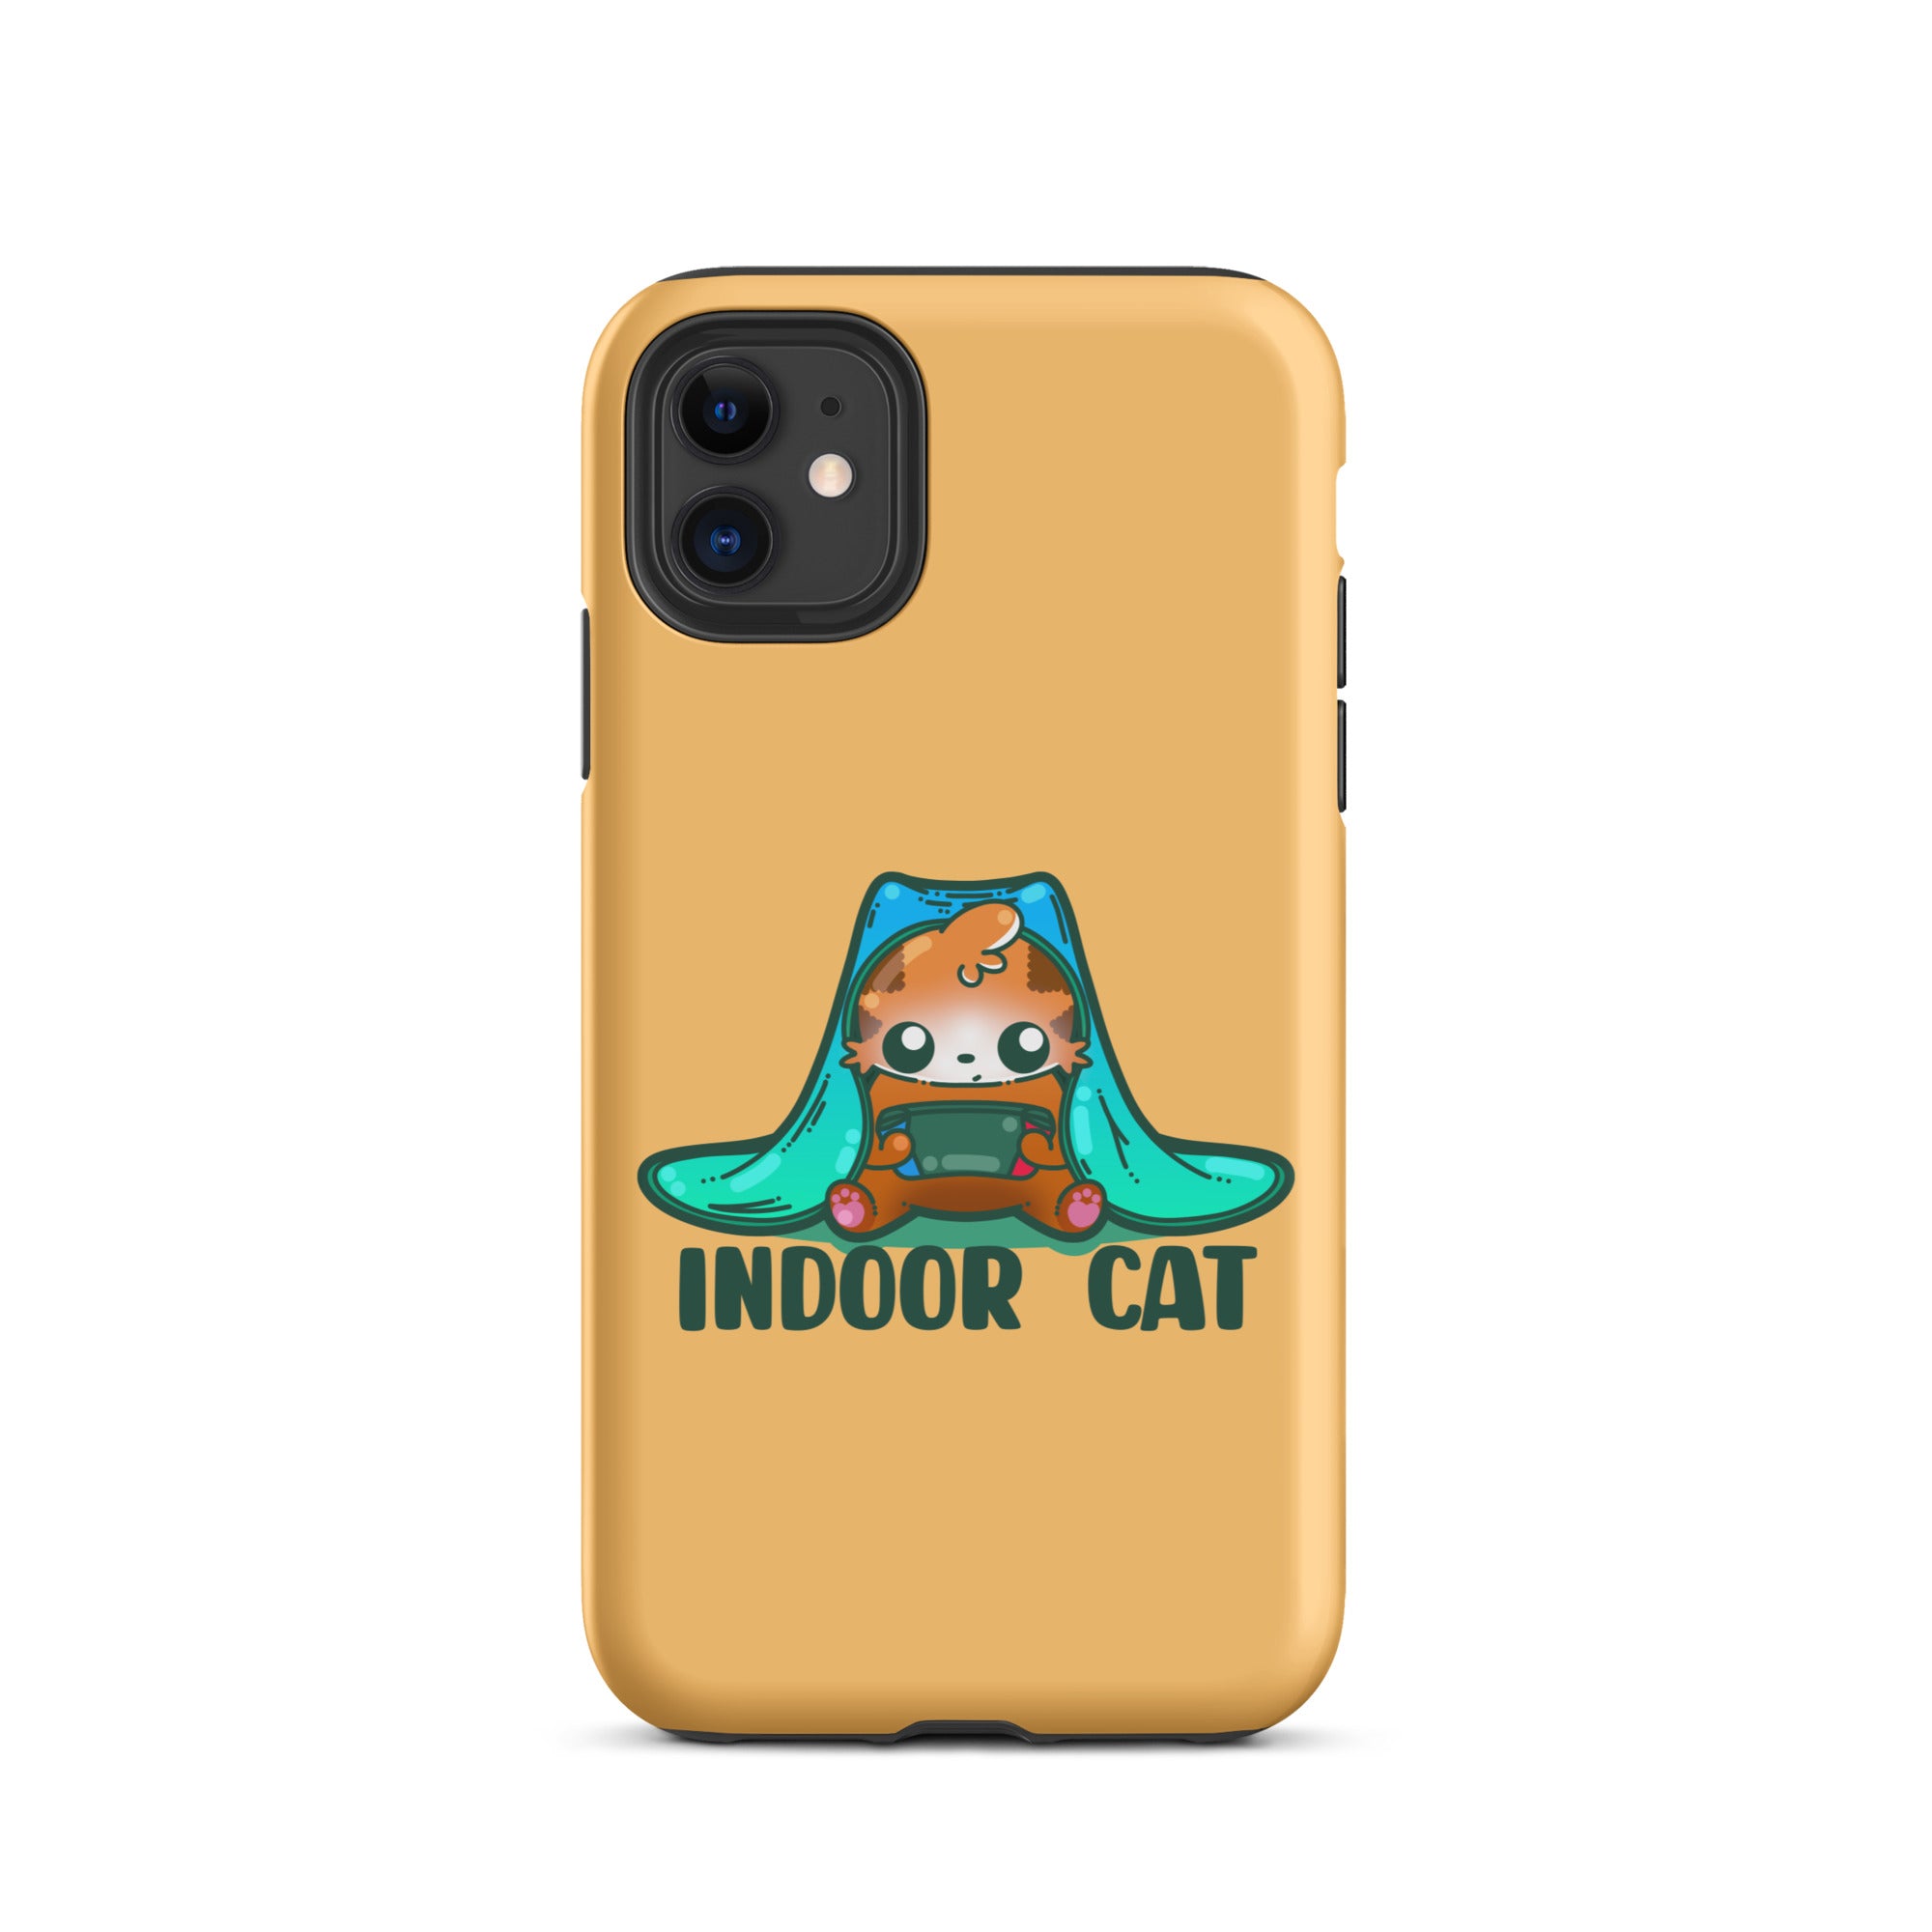 INDOOR CAT - Tough Case for iPhone® - ChubbleGumLLC